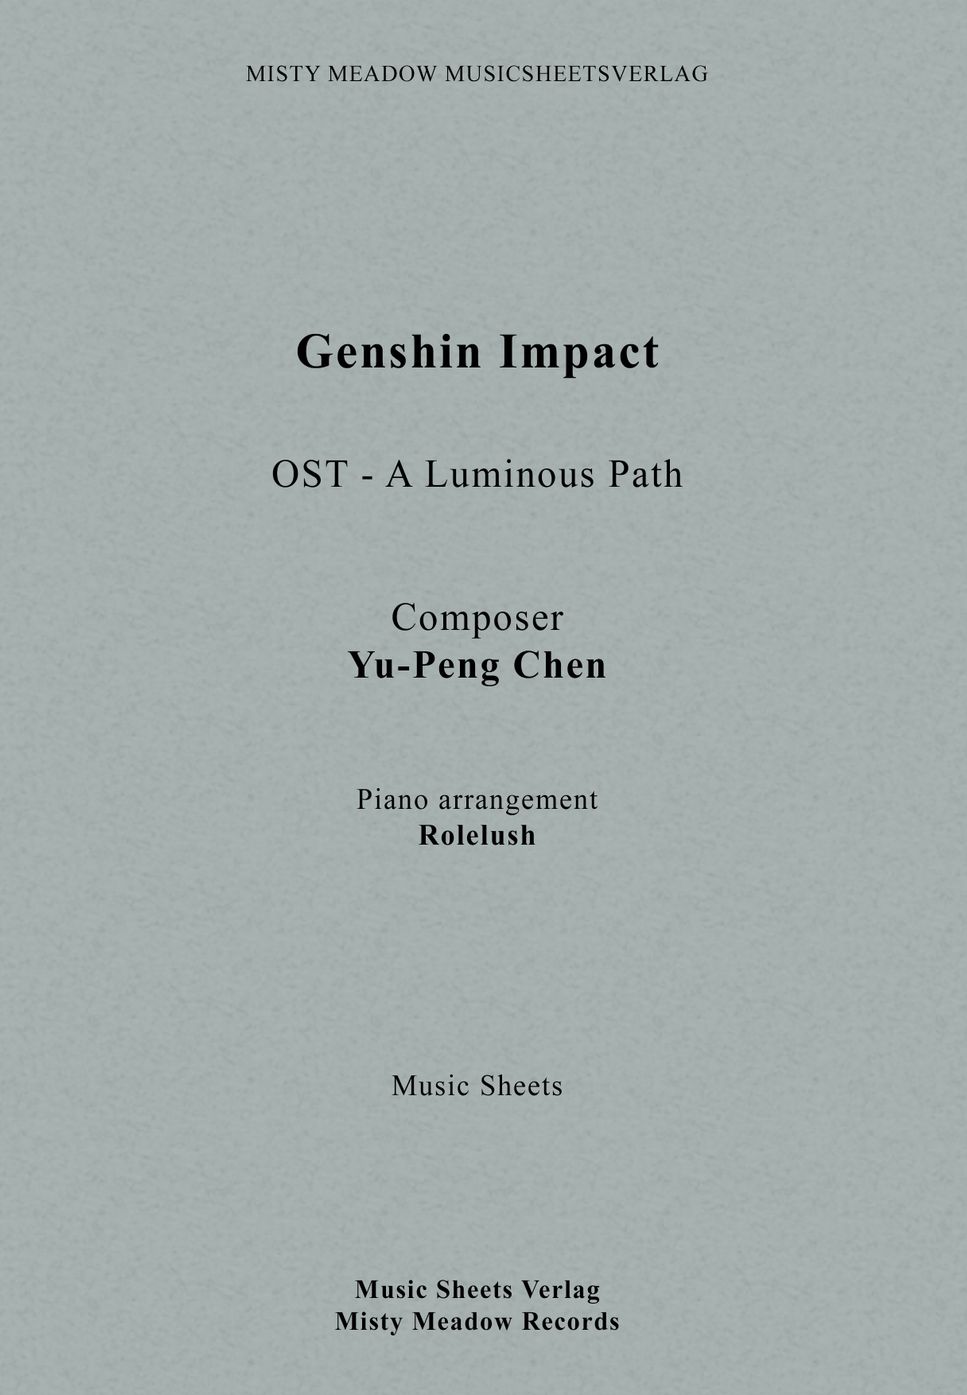 Yu-Peng Chen, HOYO-MiX - A Luminous Path (From "Genshin Impact") by Rolelush